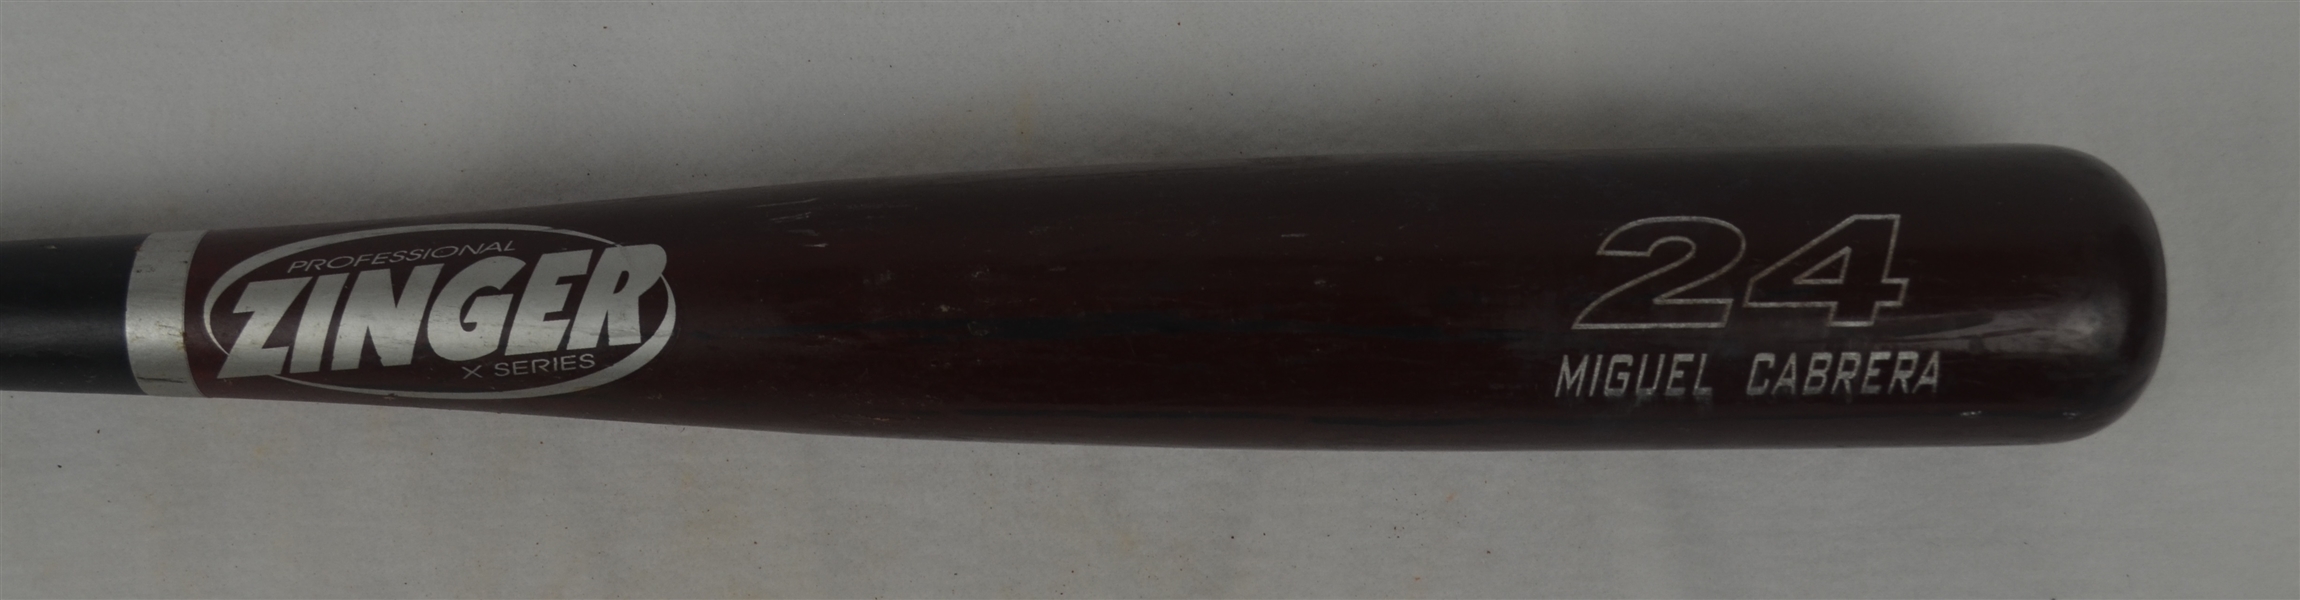 Miguel Cabrera c. 2004-07 Florida Marlins Professional Model Zinger Bat w/Medium Use